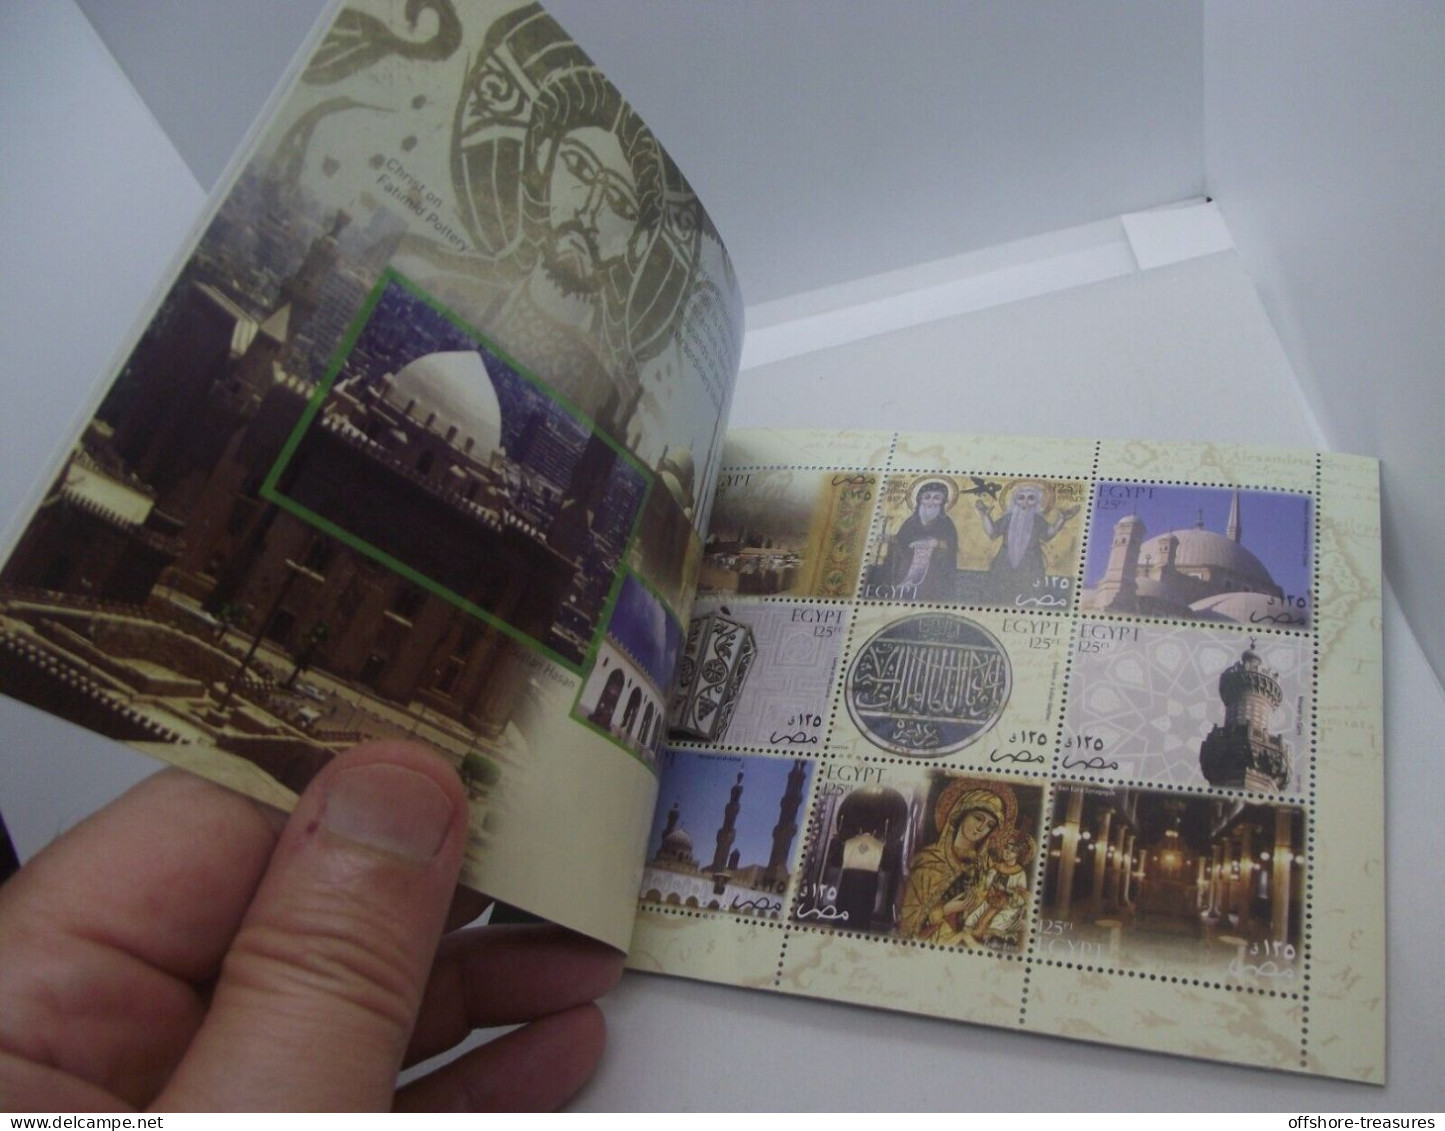 Egypt Treasures Full Booklet 2004 Incl 22 K Genuine Gold TUT Mask Stamp 10 POUND - Egypt Treasure EGYPTE